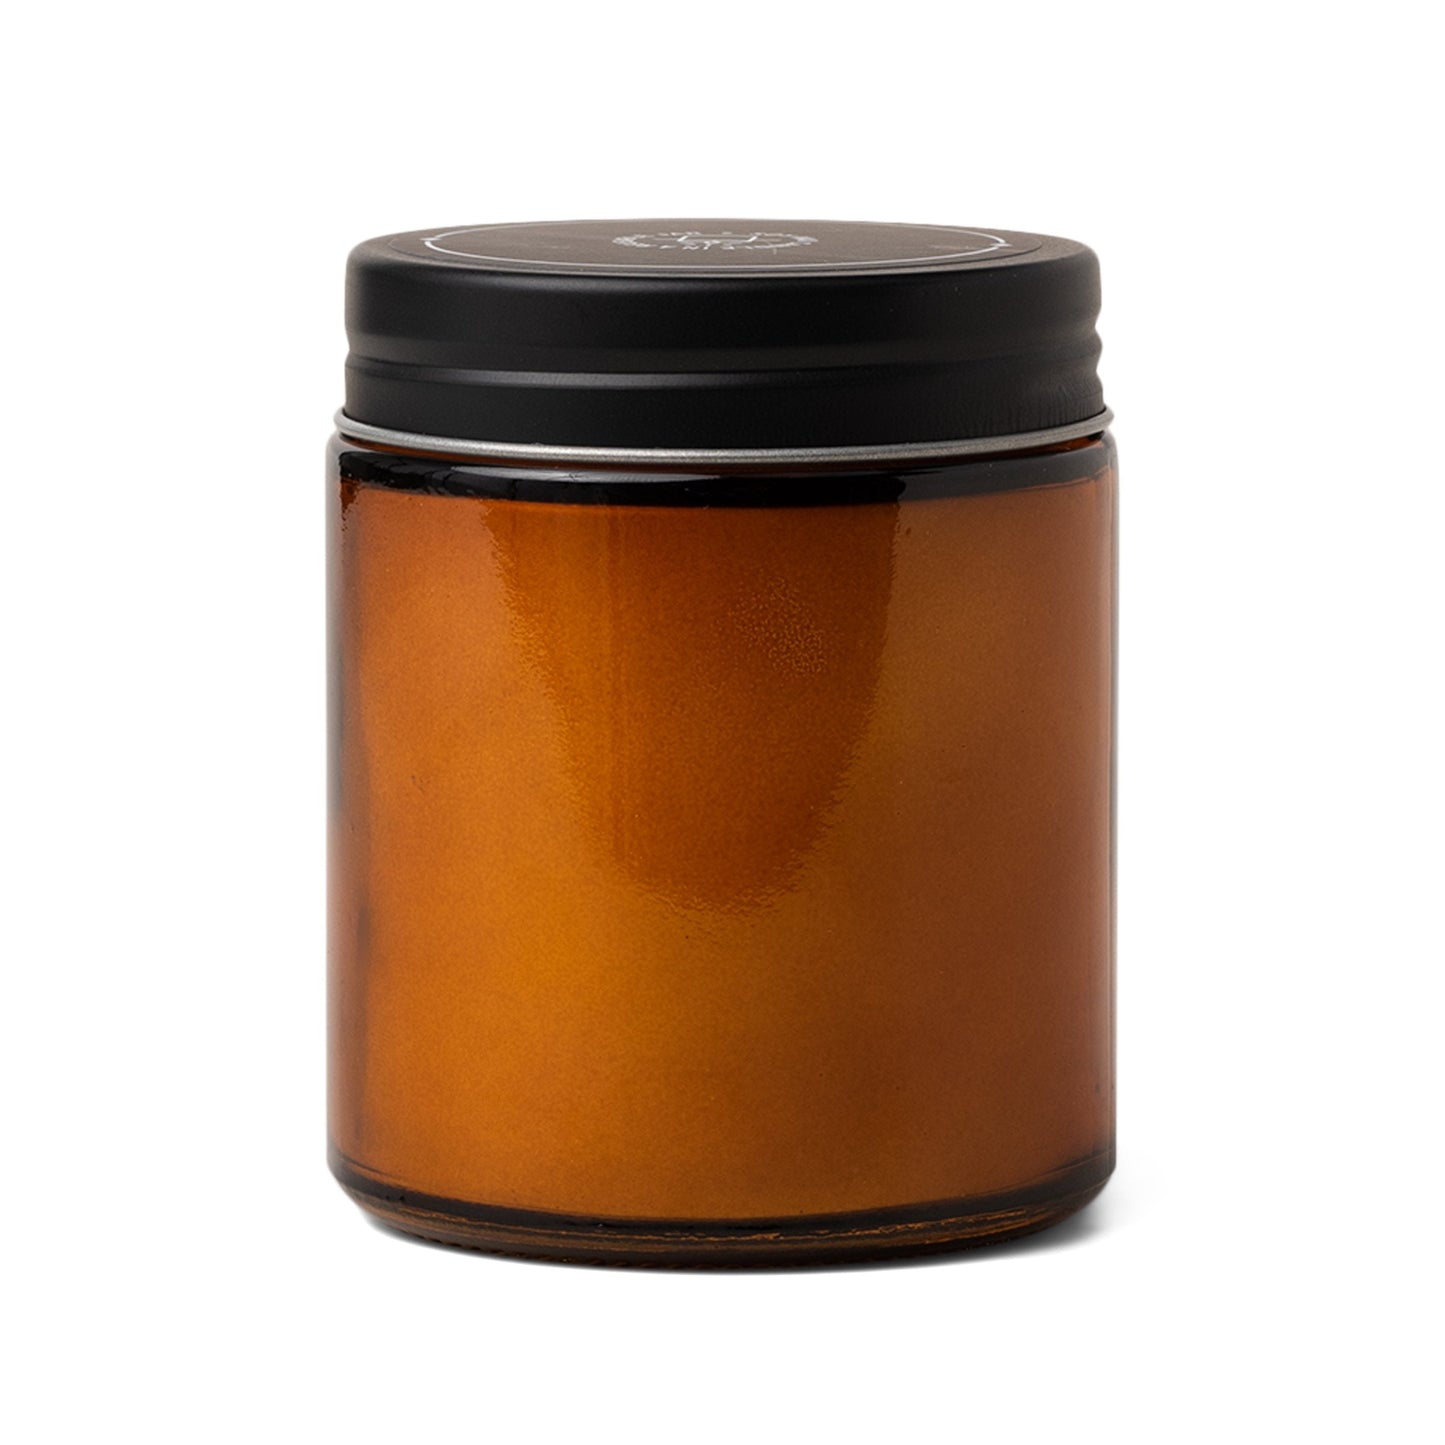 Jar Candle Bergamot & Cedar 8oz